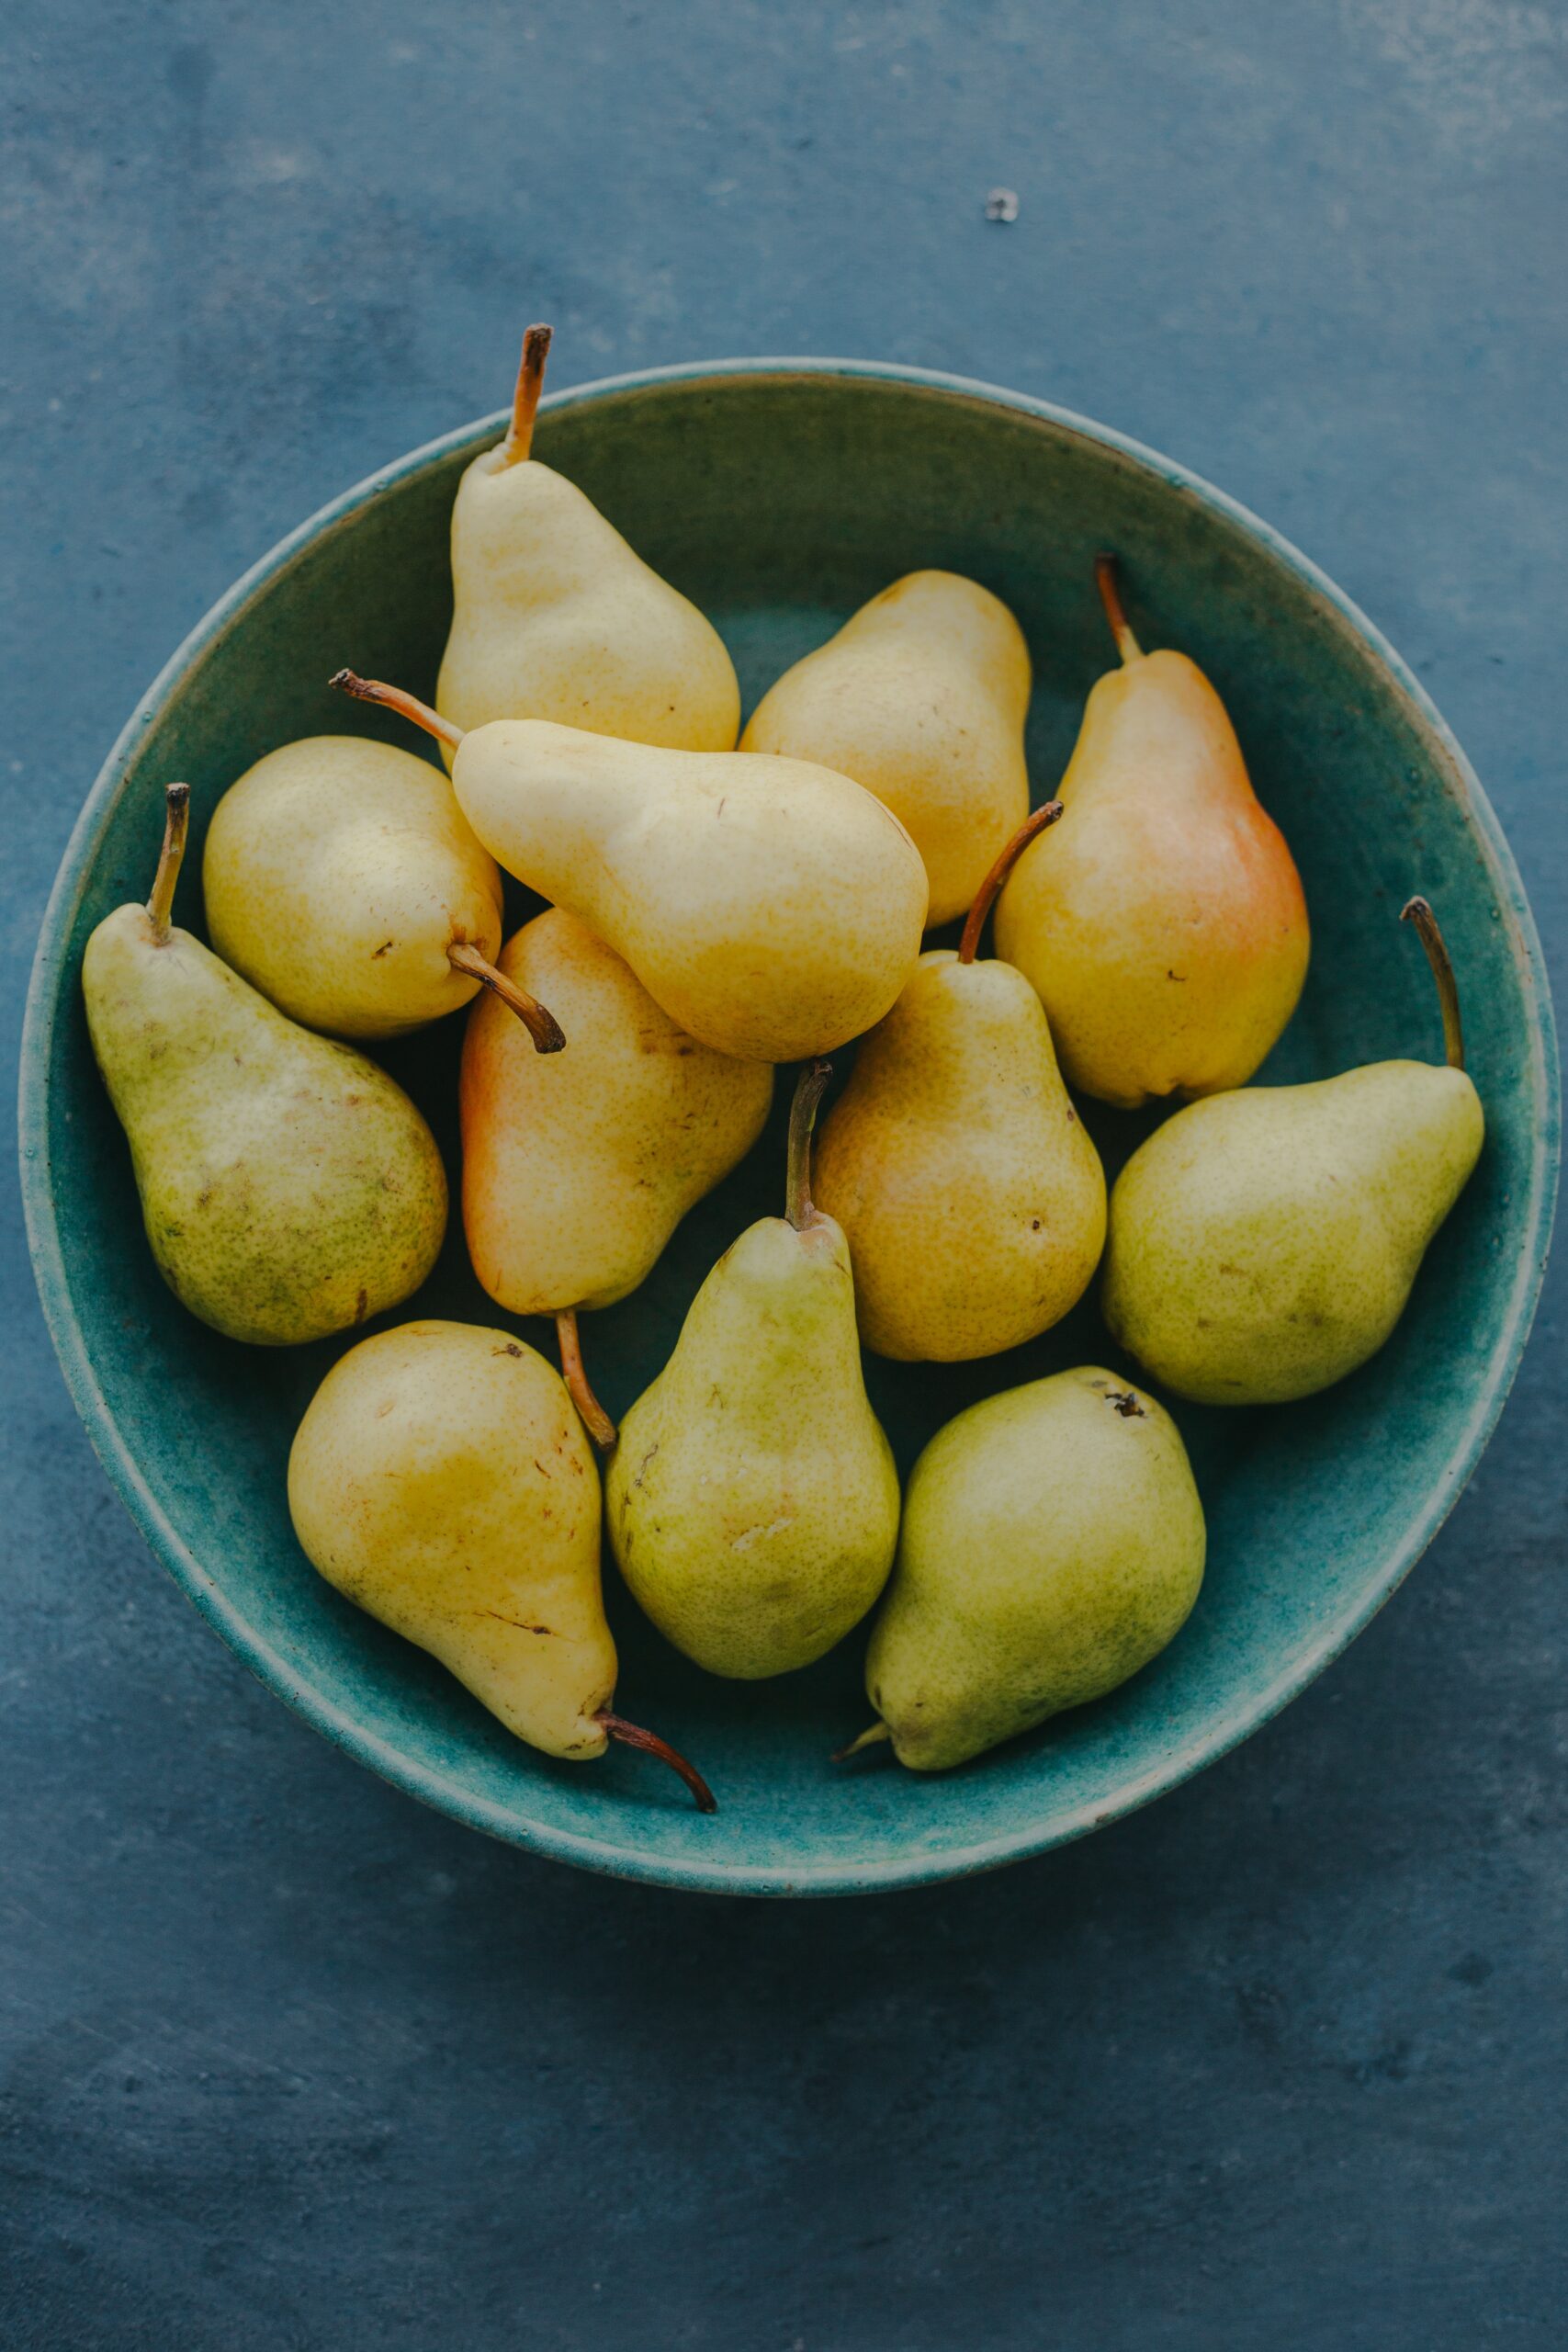 Fall Produce: Bowl of Pears_october seasonal produce